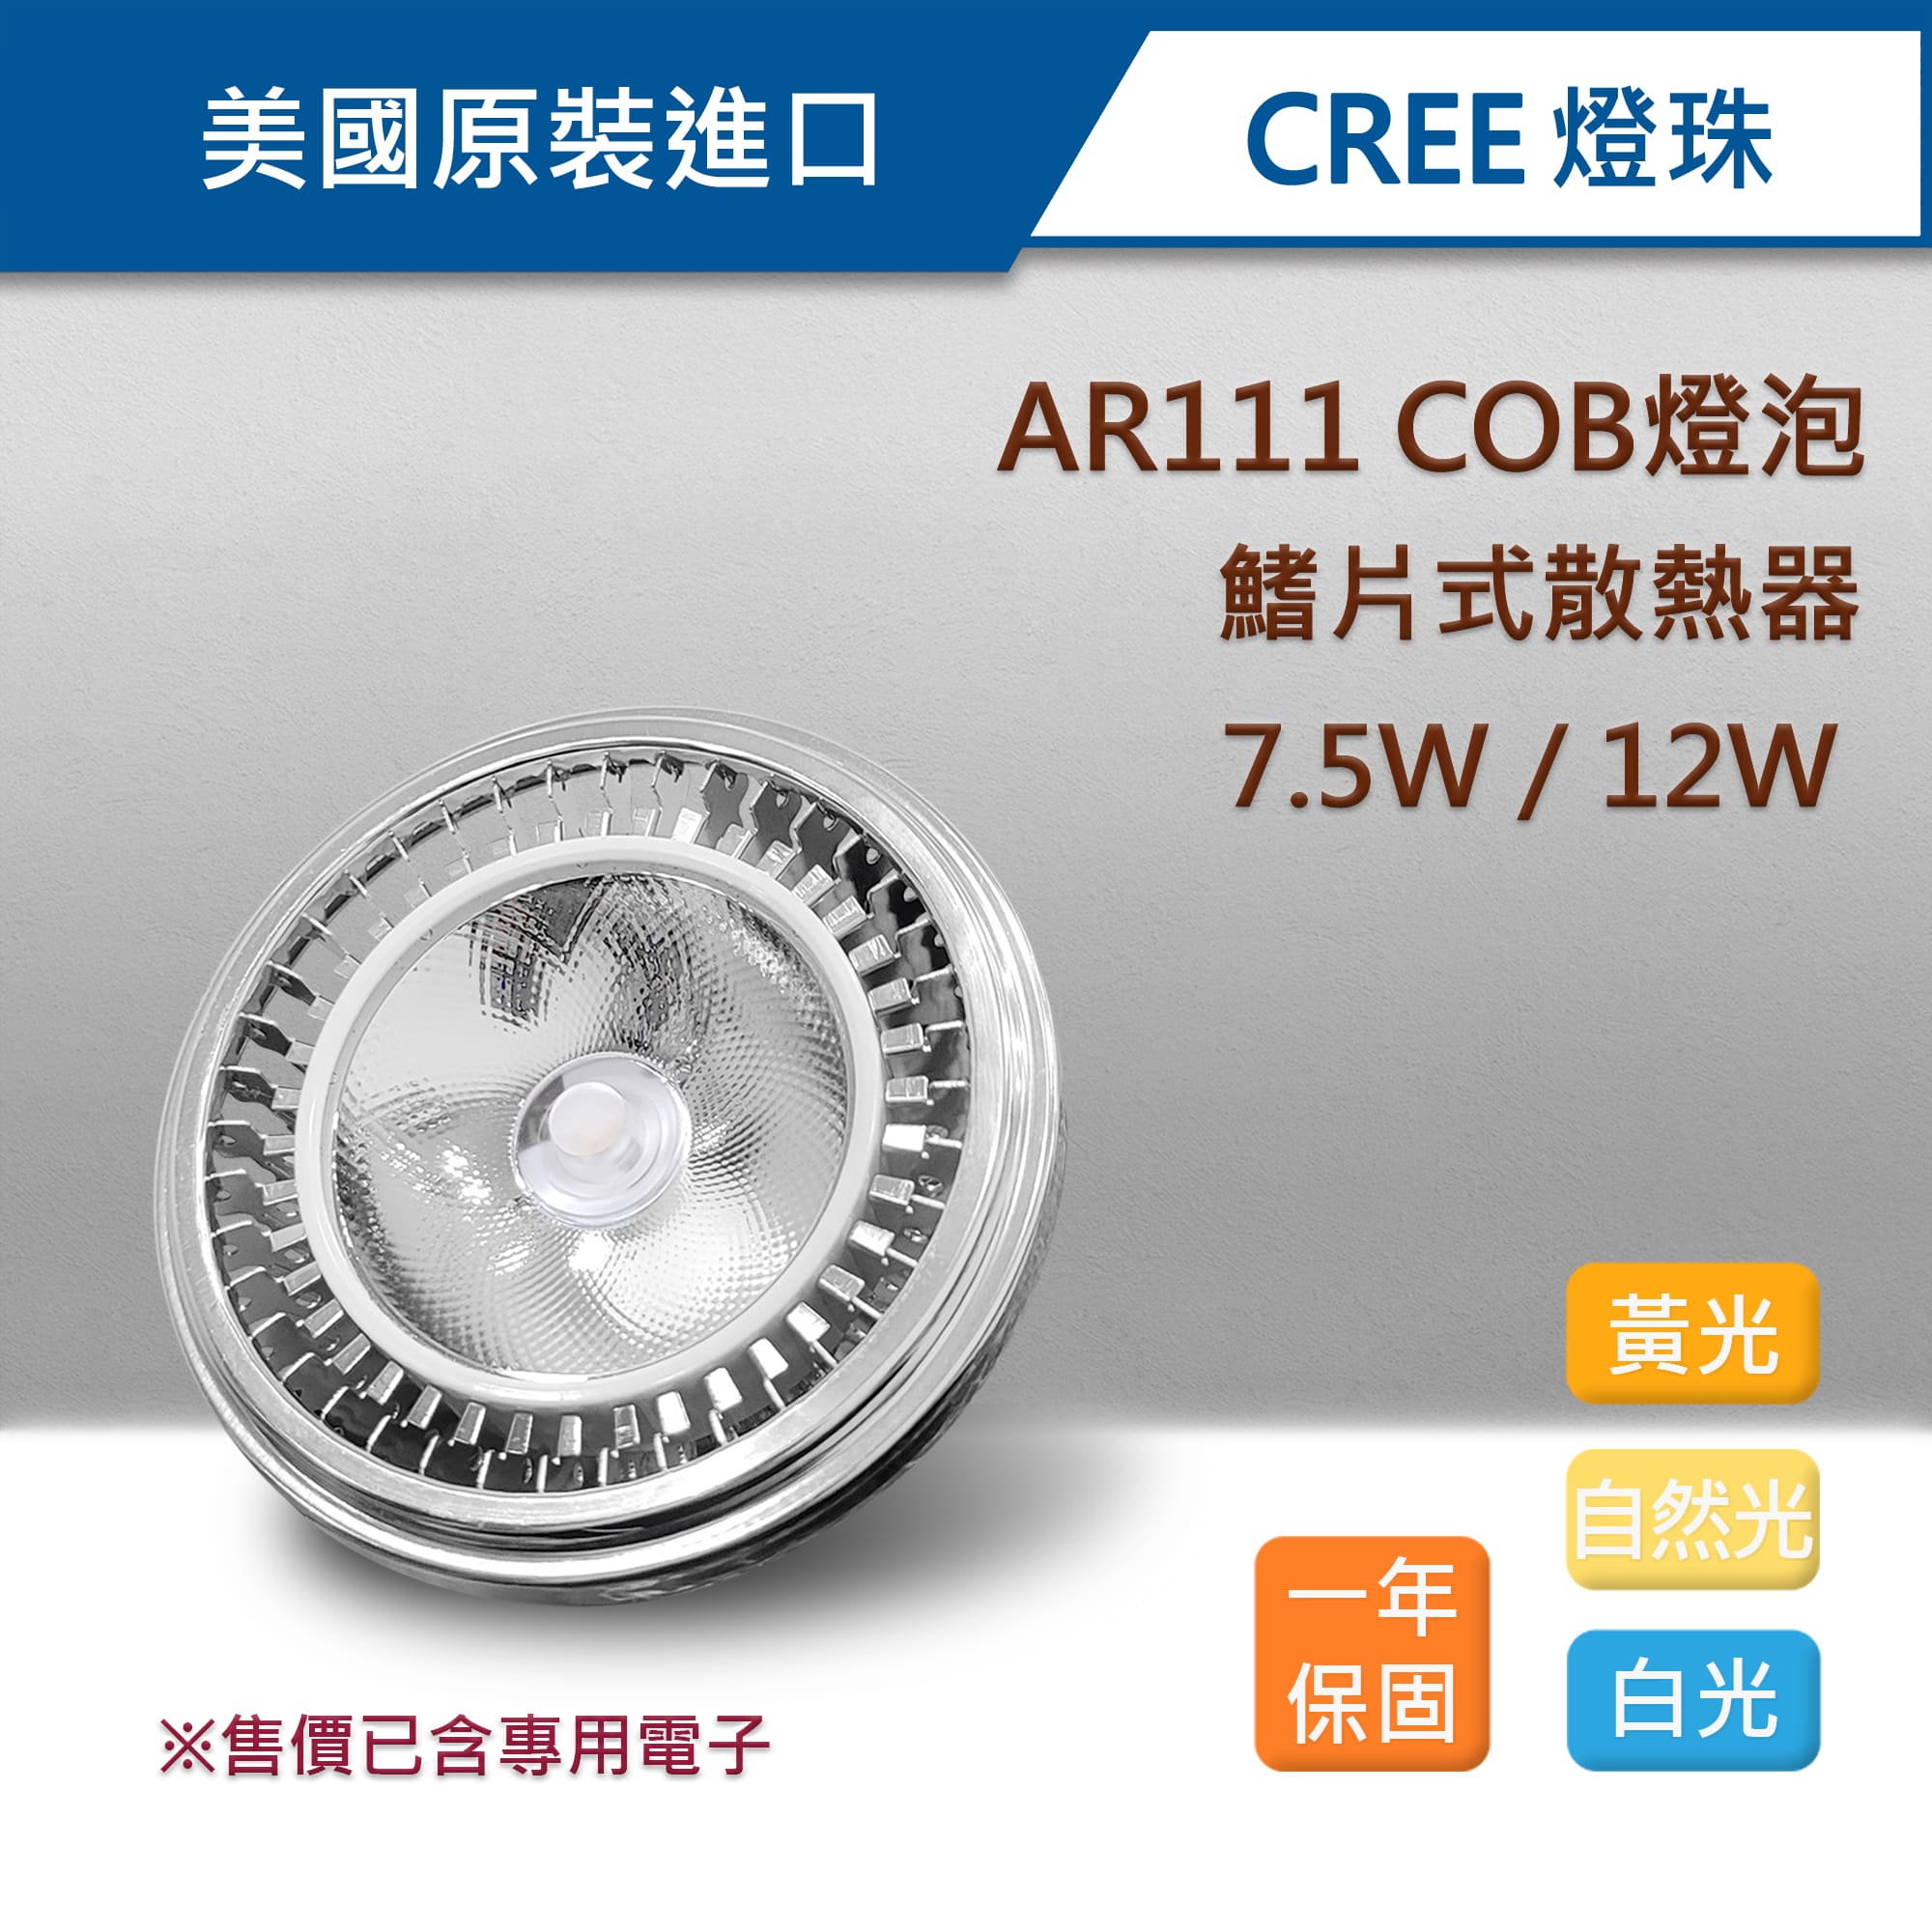 AR111-COB鰭片-001